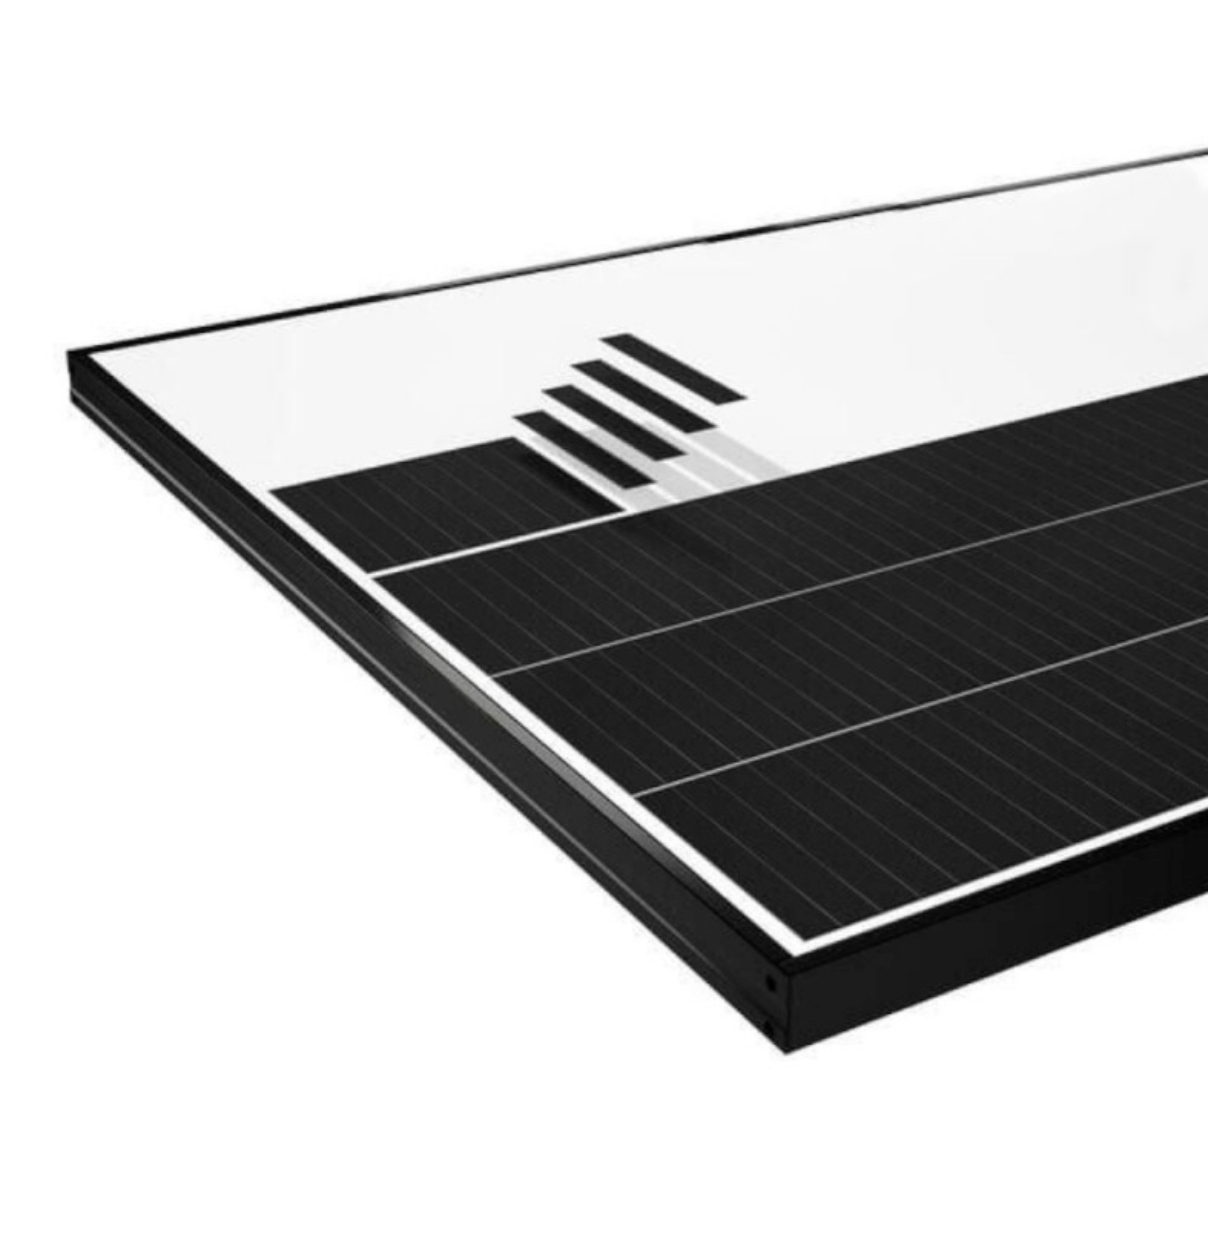 SunPower Solarmodul Performance P6 405 Wp Full Black 30 mm Photovoltaikmodul shingled